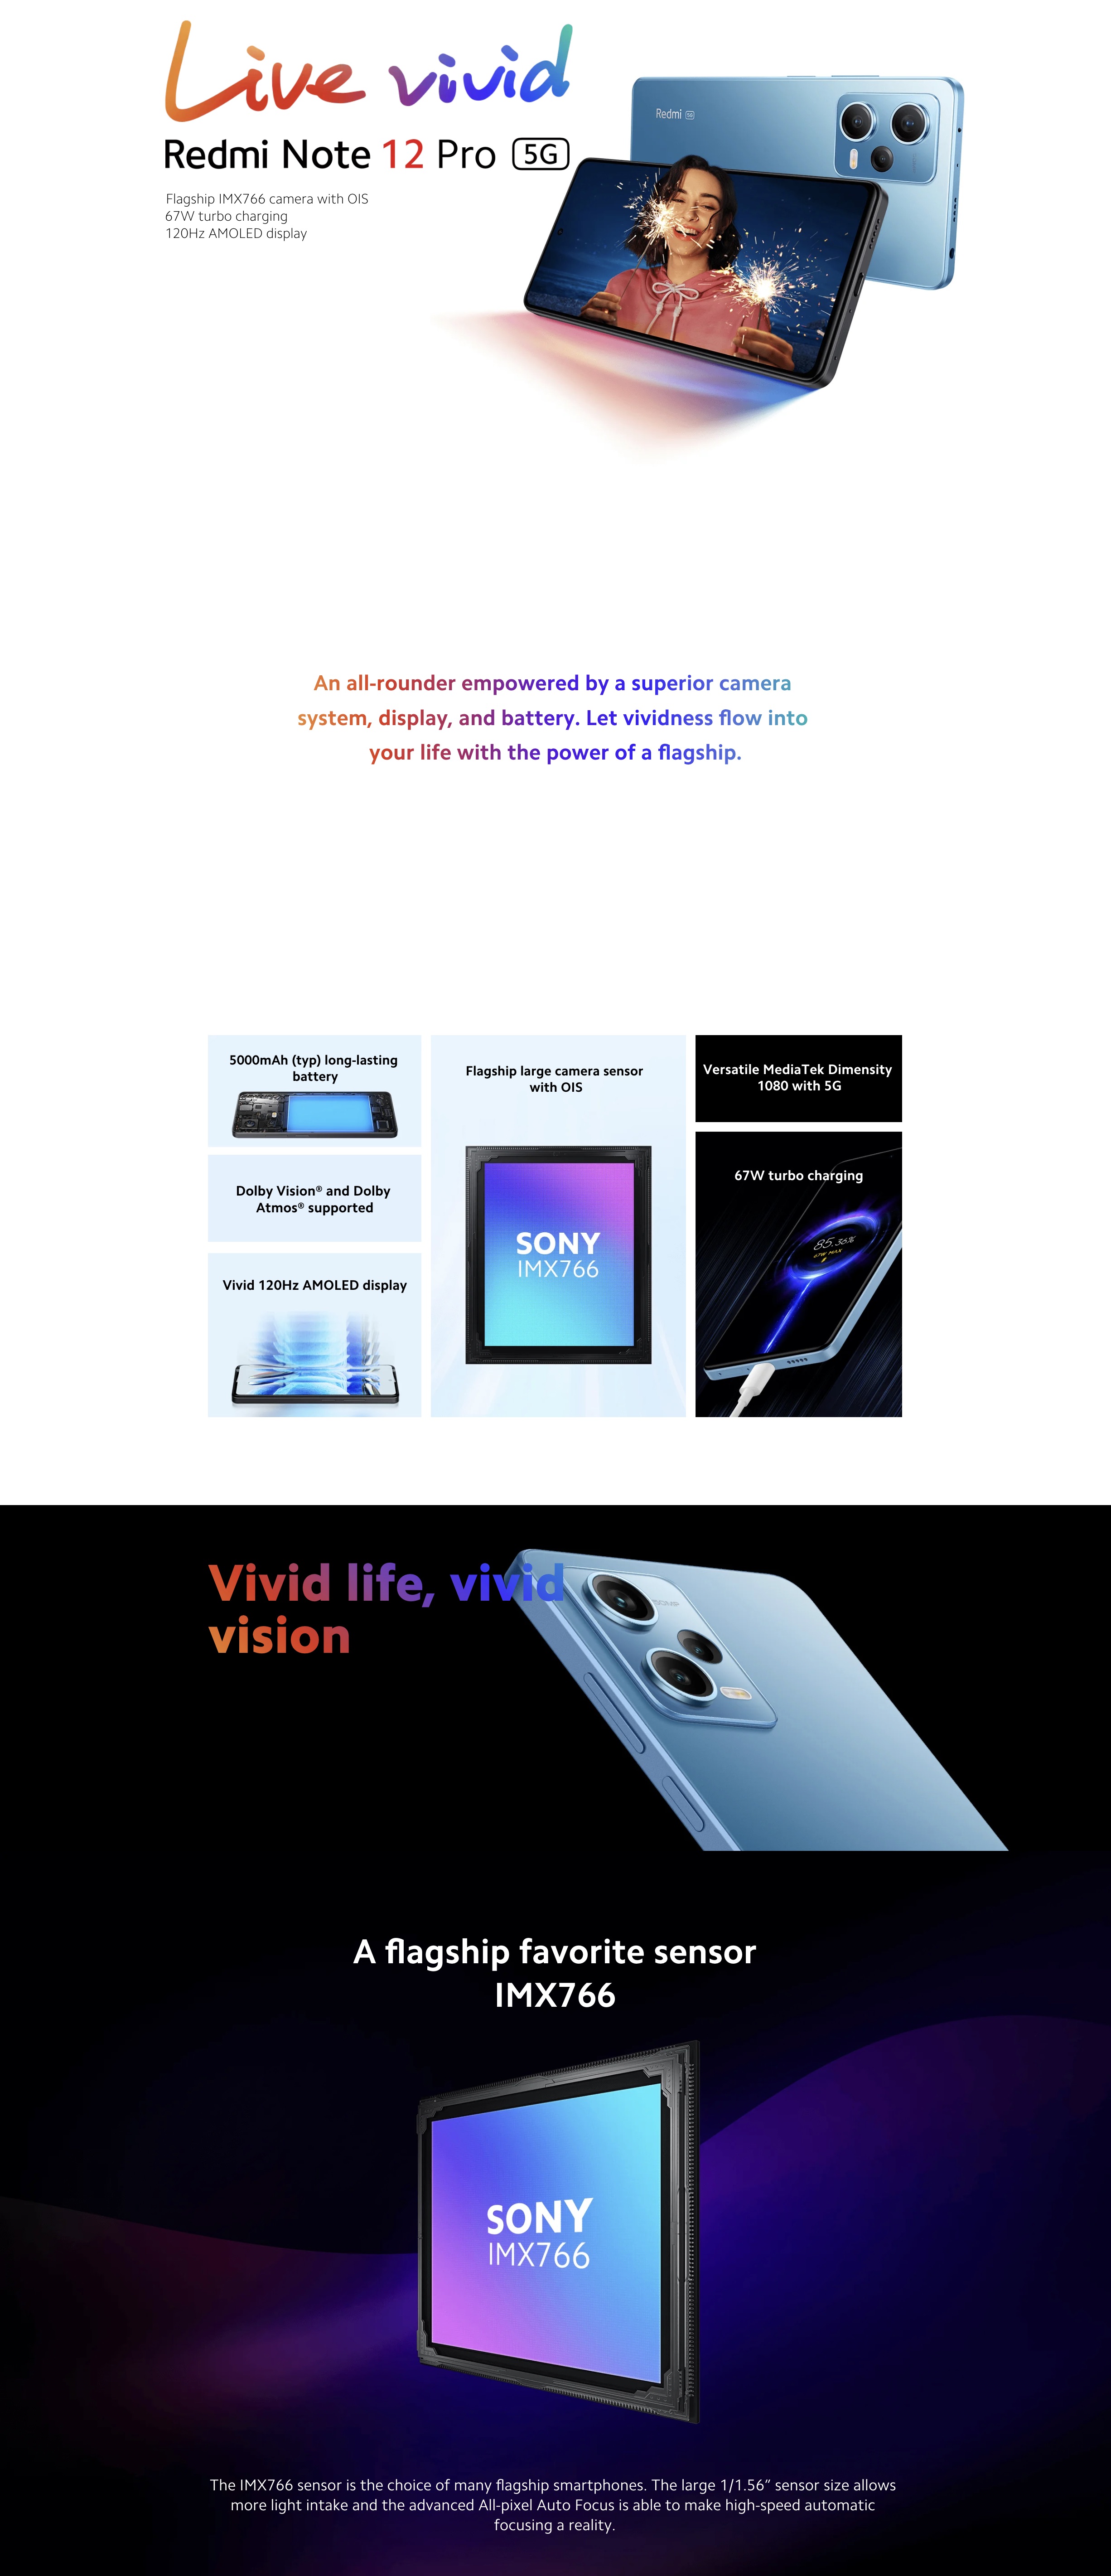 Xiaomi-Redmi-Note-12-Pro-5G-Image-Description-1